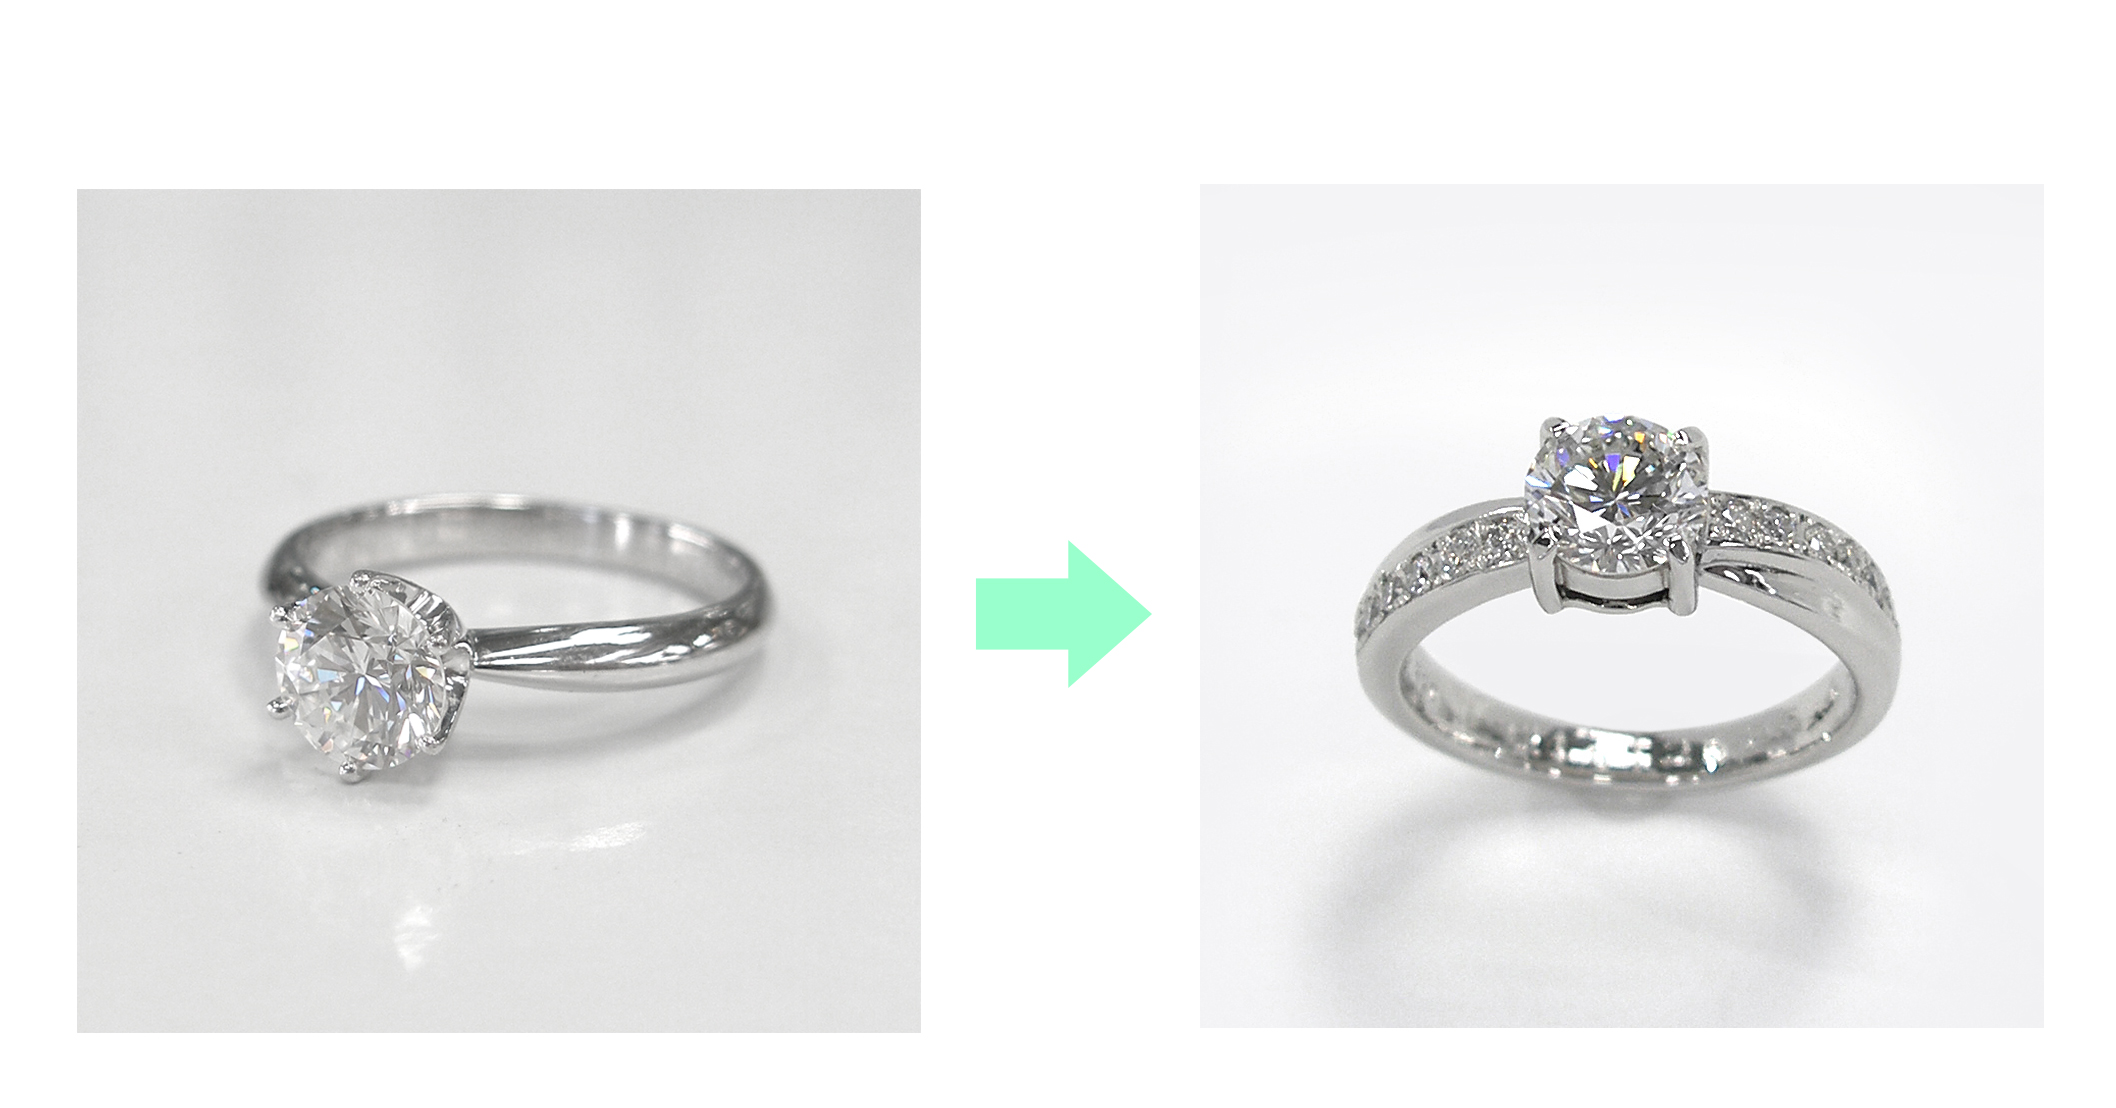 受け継がれるダイヤモンド。お母さまからご自身の婚約指輪を手渡され、お嫁さんに贈る婚約指輪にジュエリーリフォーム